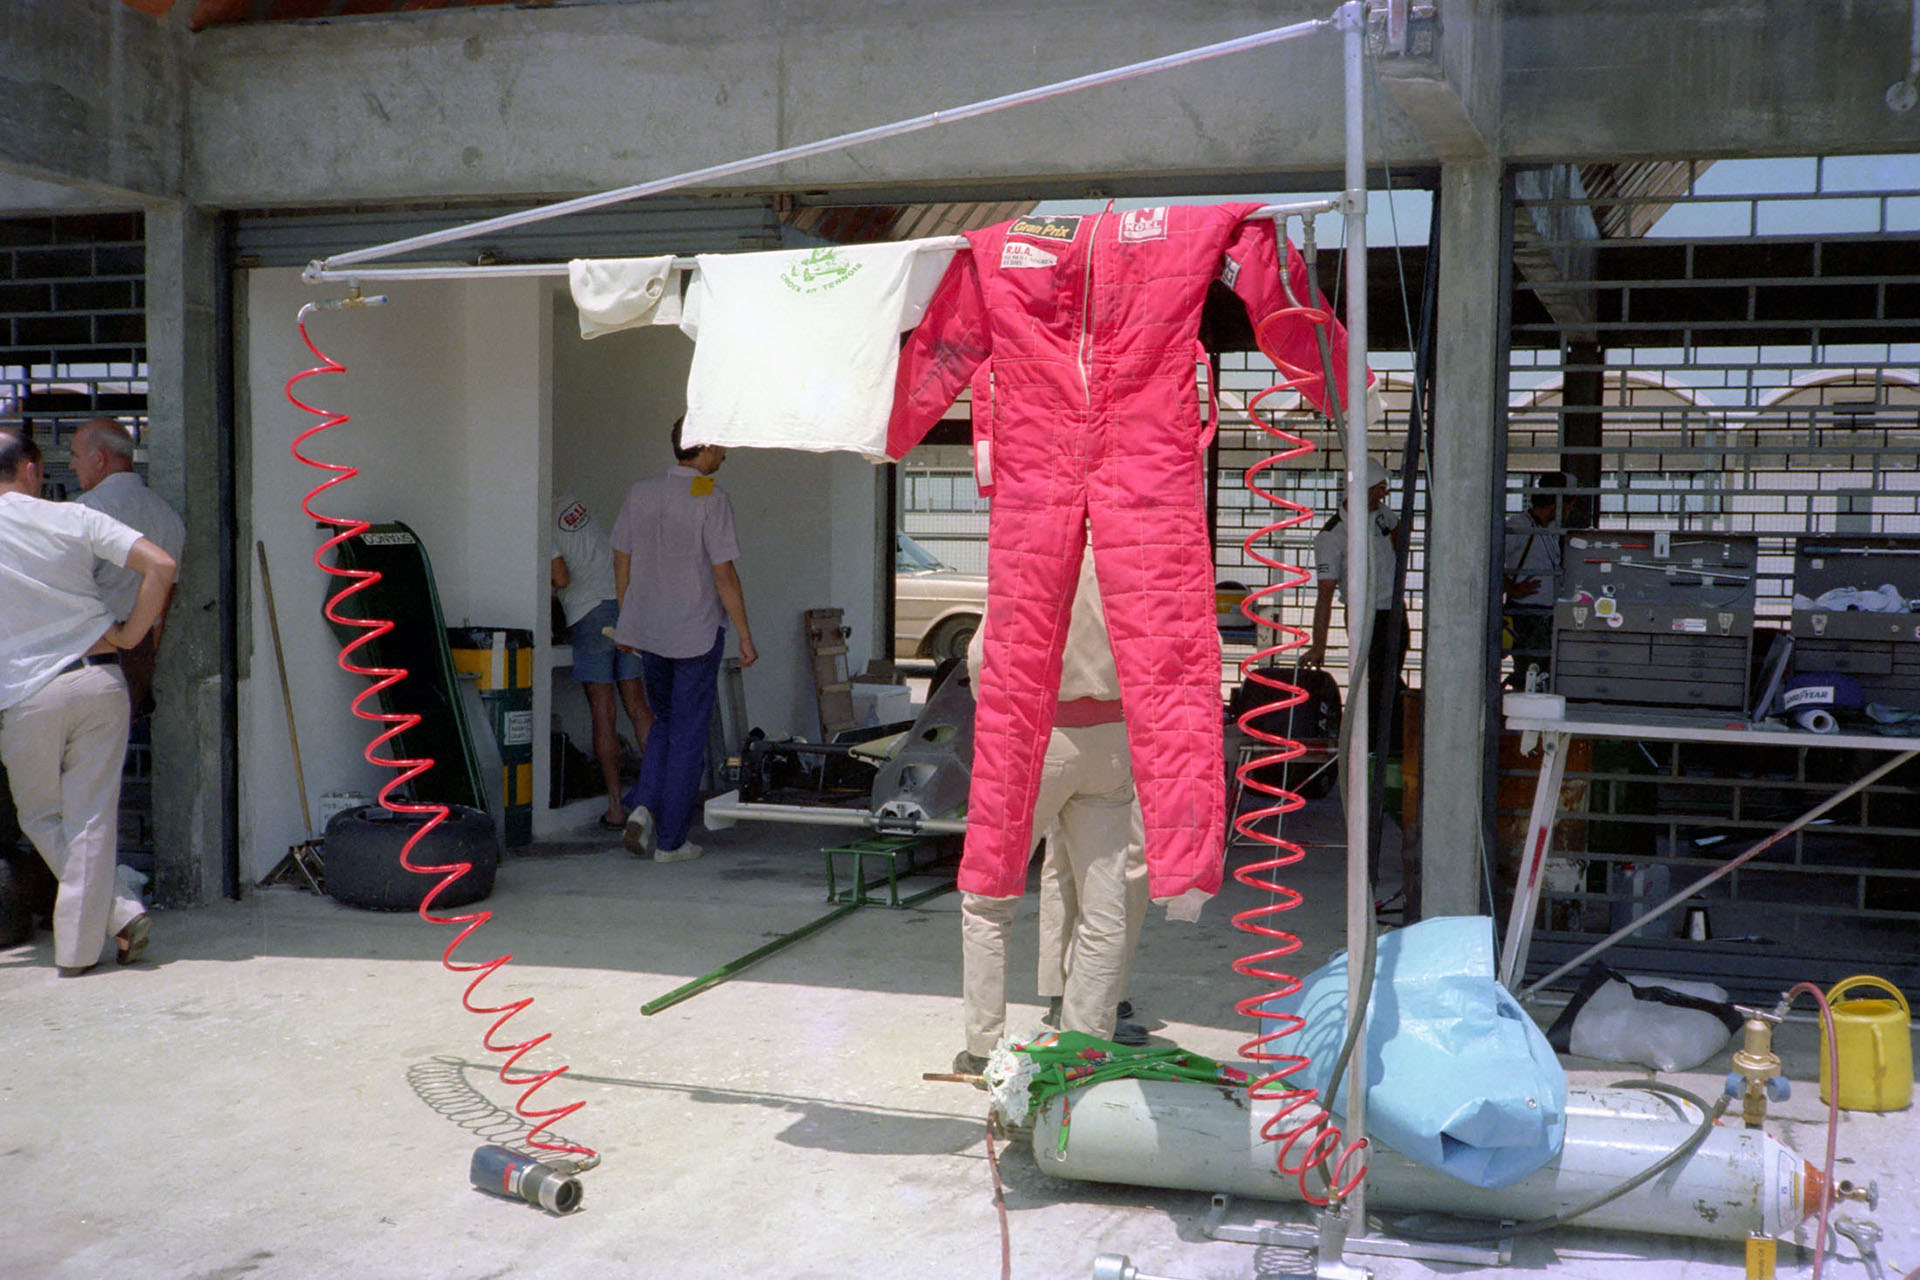 El buzo de Reutemann colgado en Brasil. Símbolo del adios que fue definitivo tras abadonar en Río de Janeiro 82 (foto Alejandro de Brito)